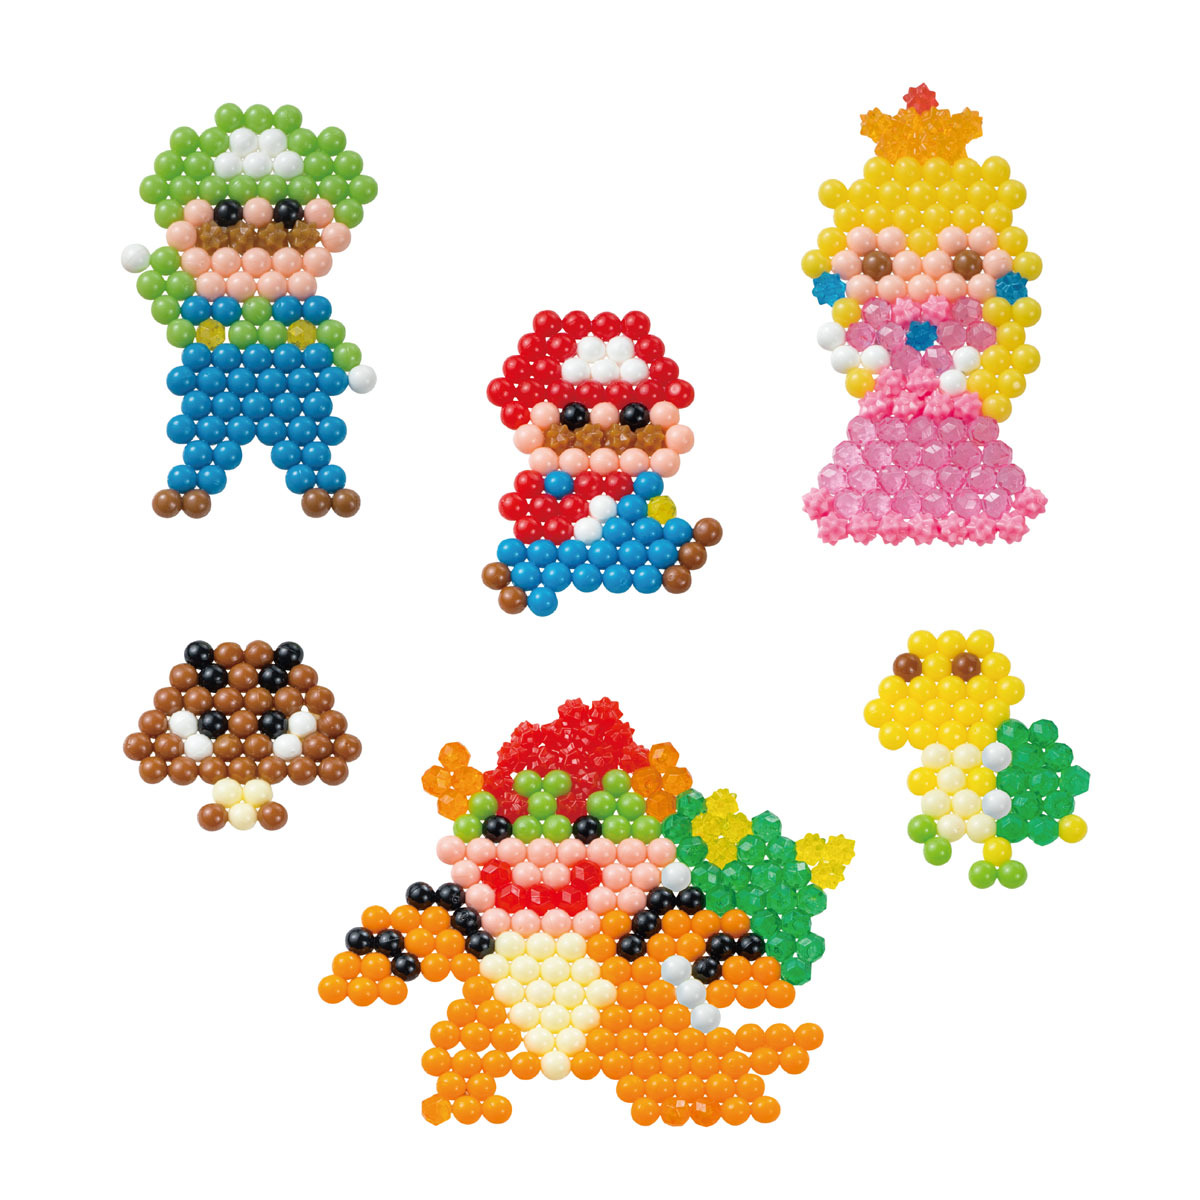 Nur Zusatz Wasser 900 + Beads Aquabeads Super Mario Character Set Spielset